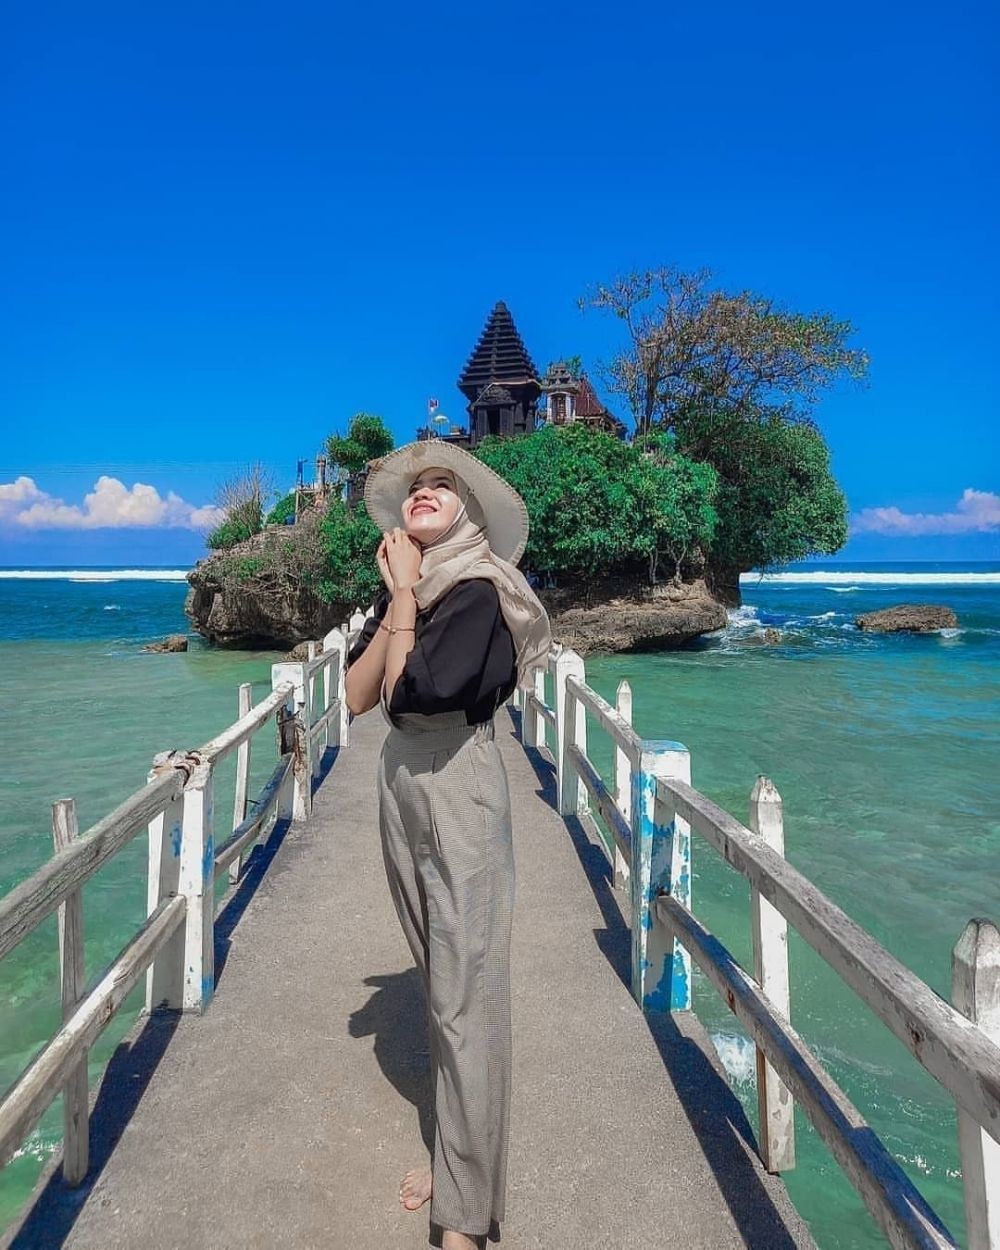 Warga Jakarta Tidak Harus Liburan Ke Bali ! Kunjungi 8 Wisata Pantai Jawa Yang Mirip Pulau Dewata Ini 8